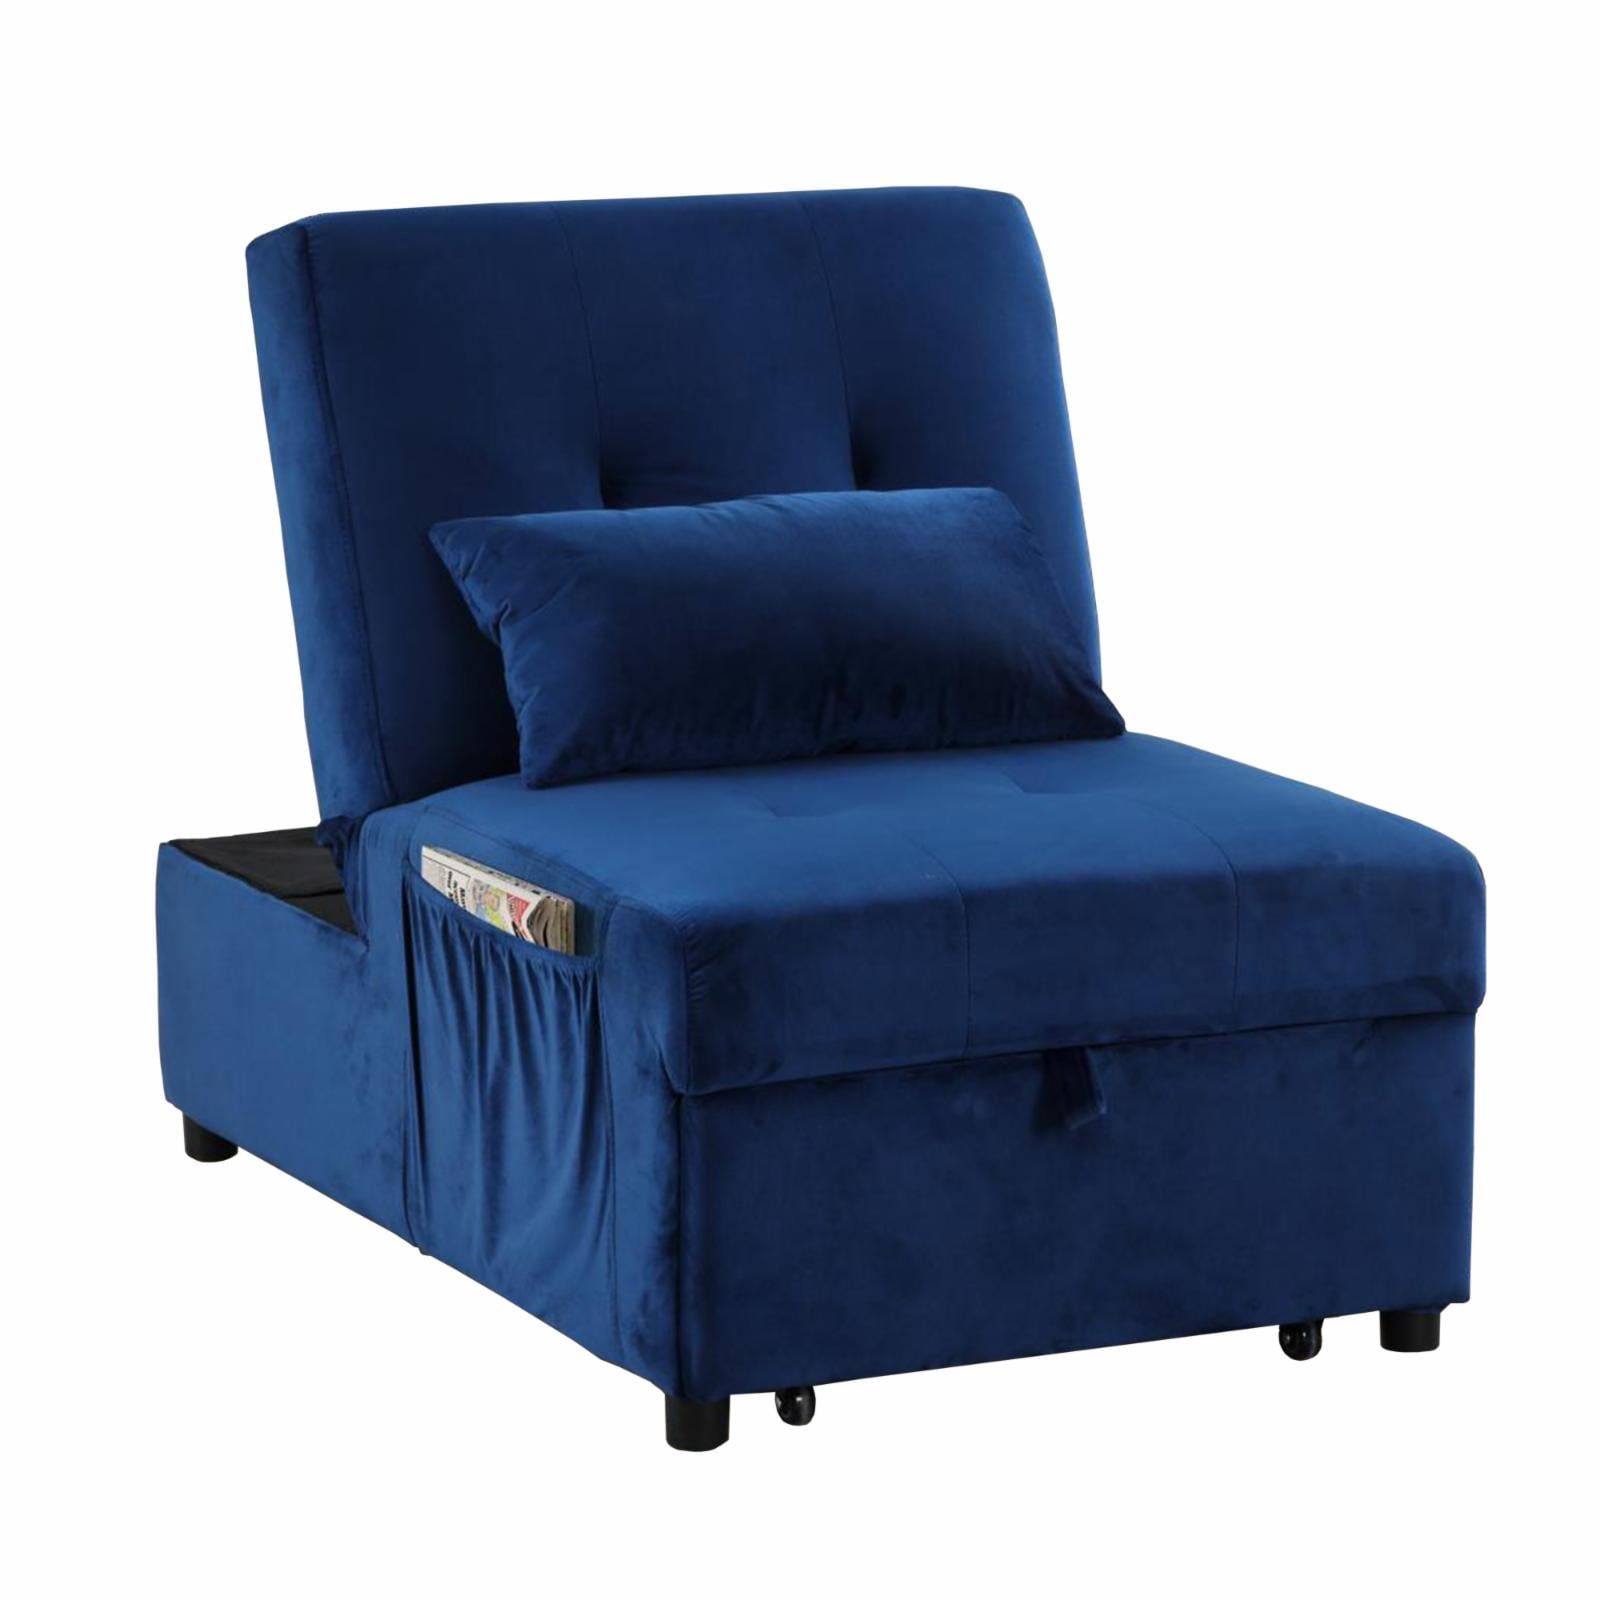 Regal Blue Velvet Adjustable Sleeper Lounge Chaise